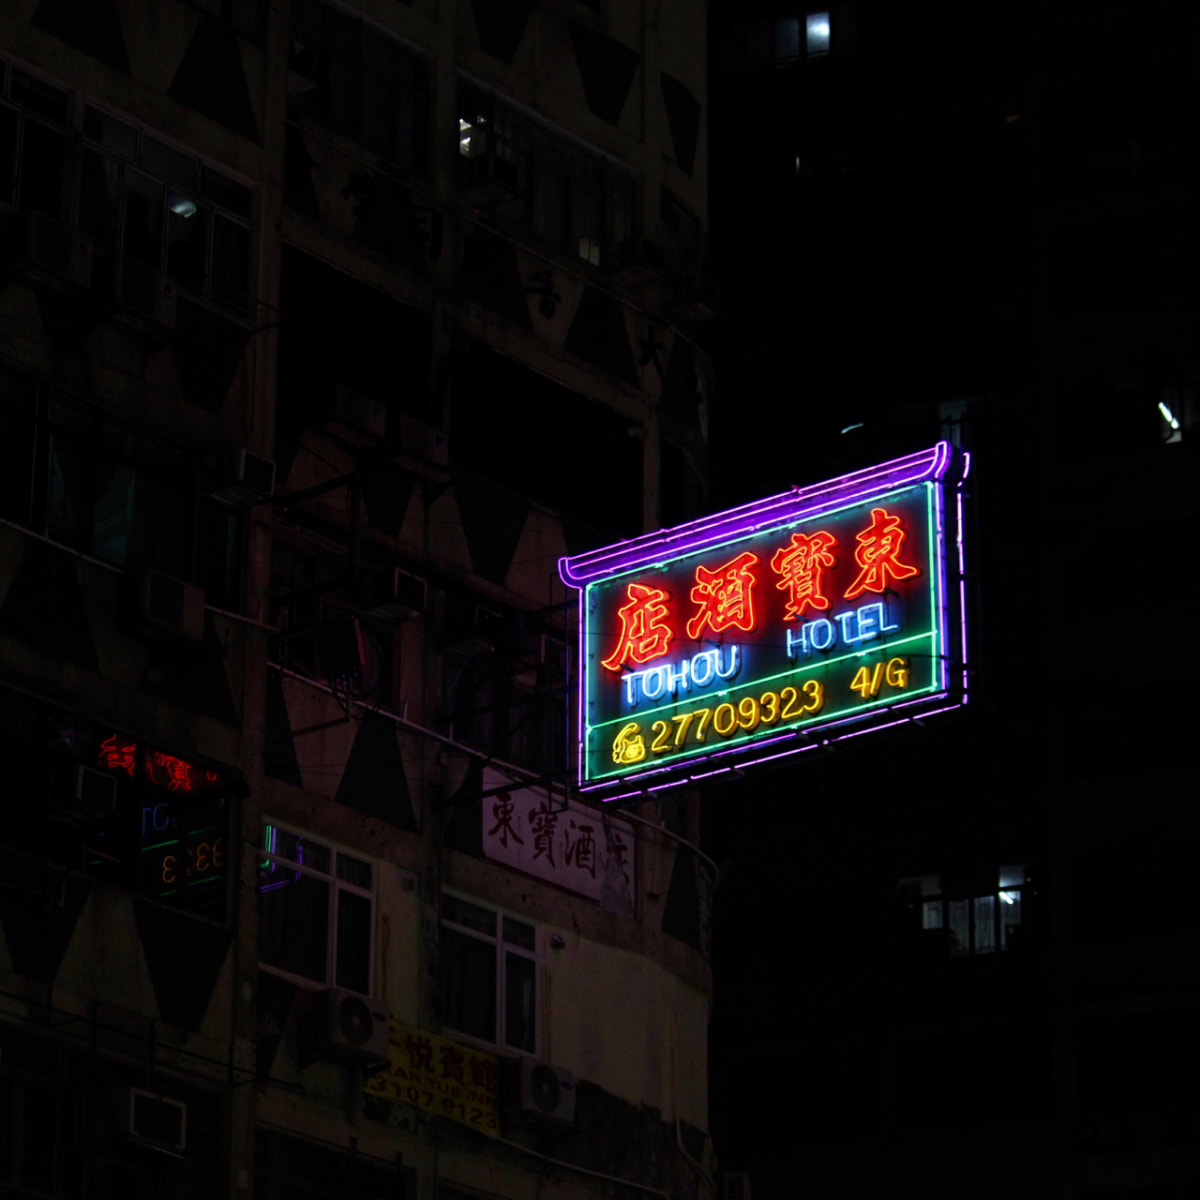 Hong Kong I